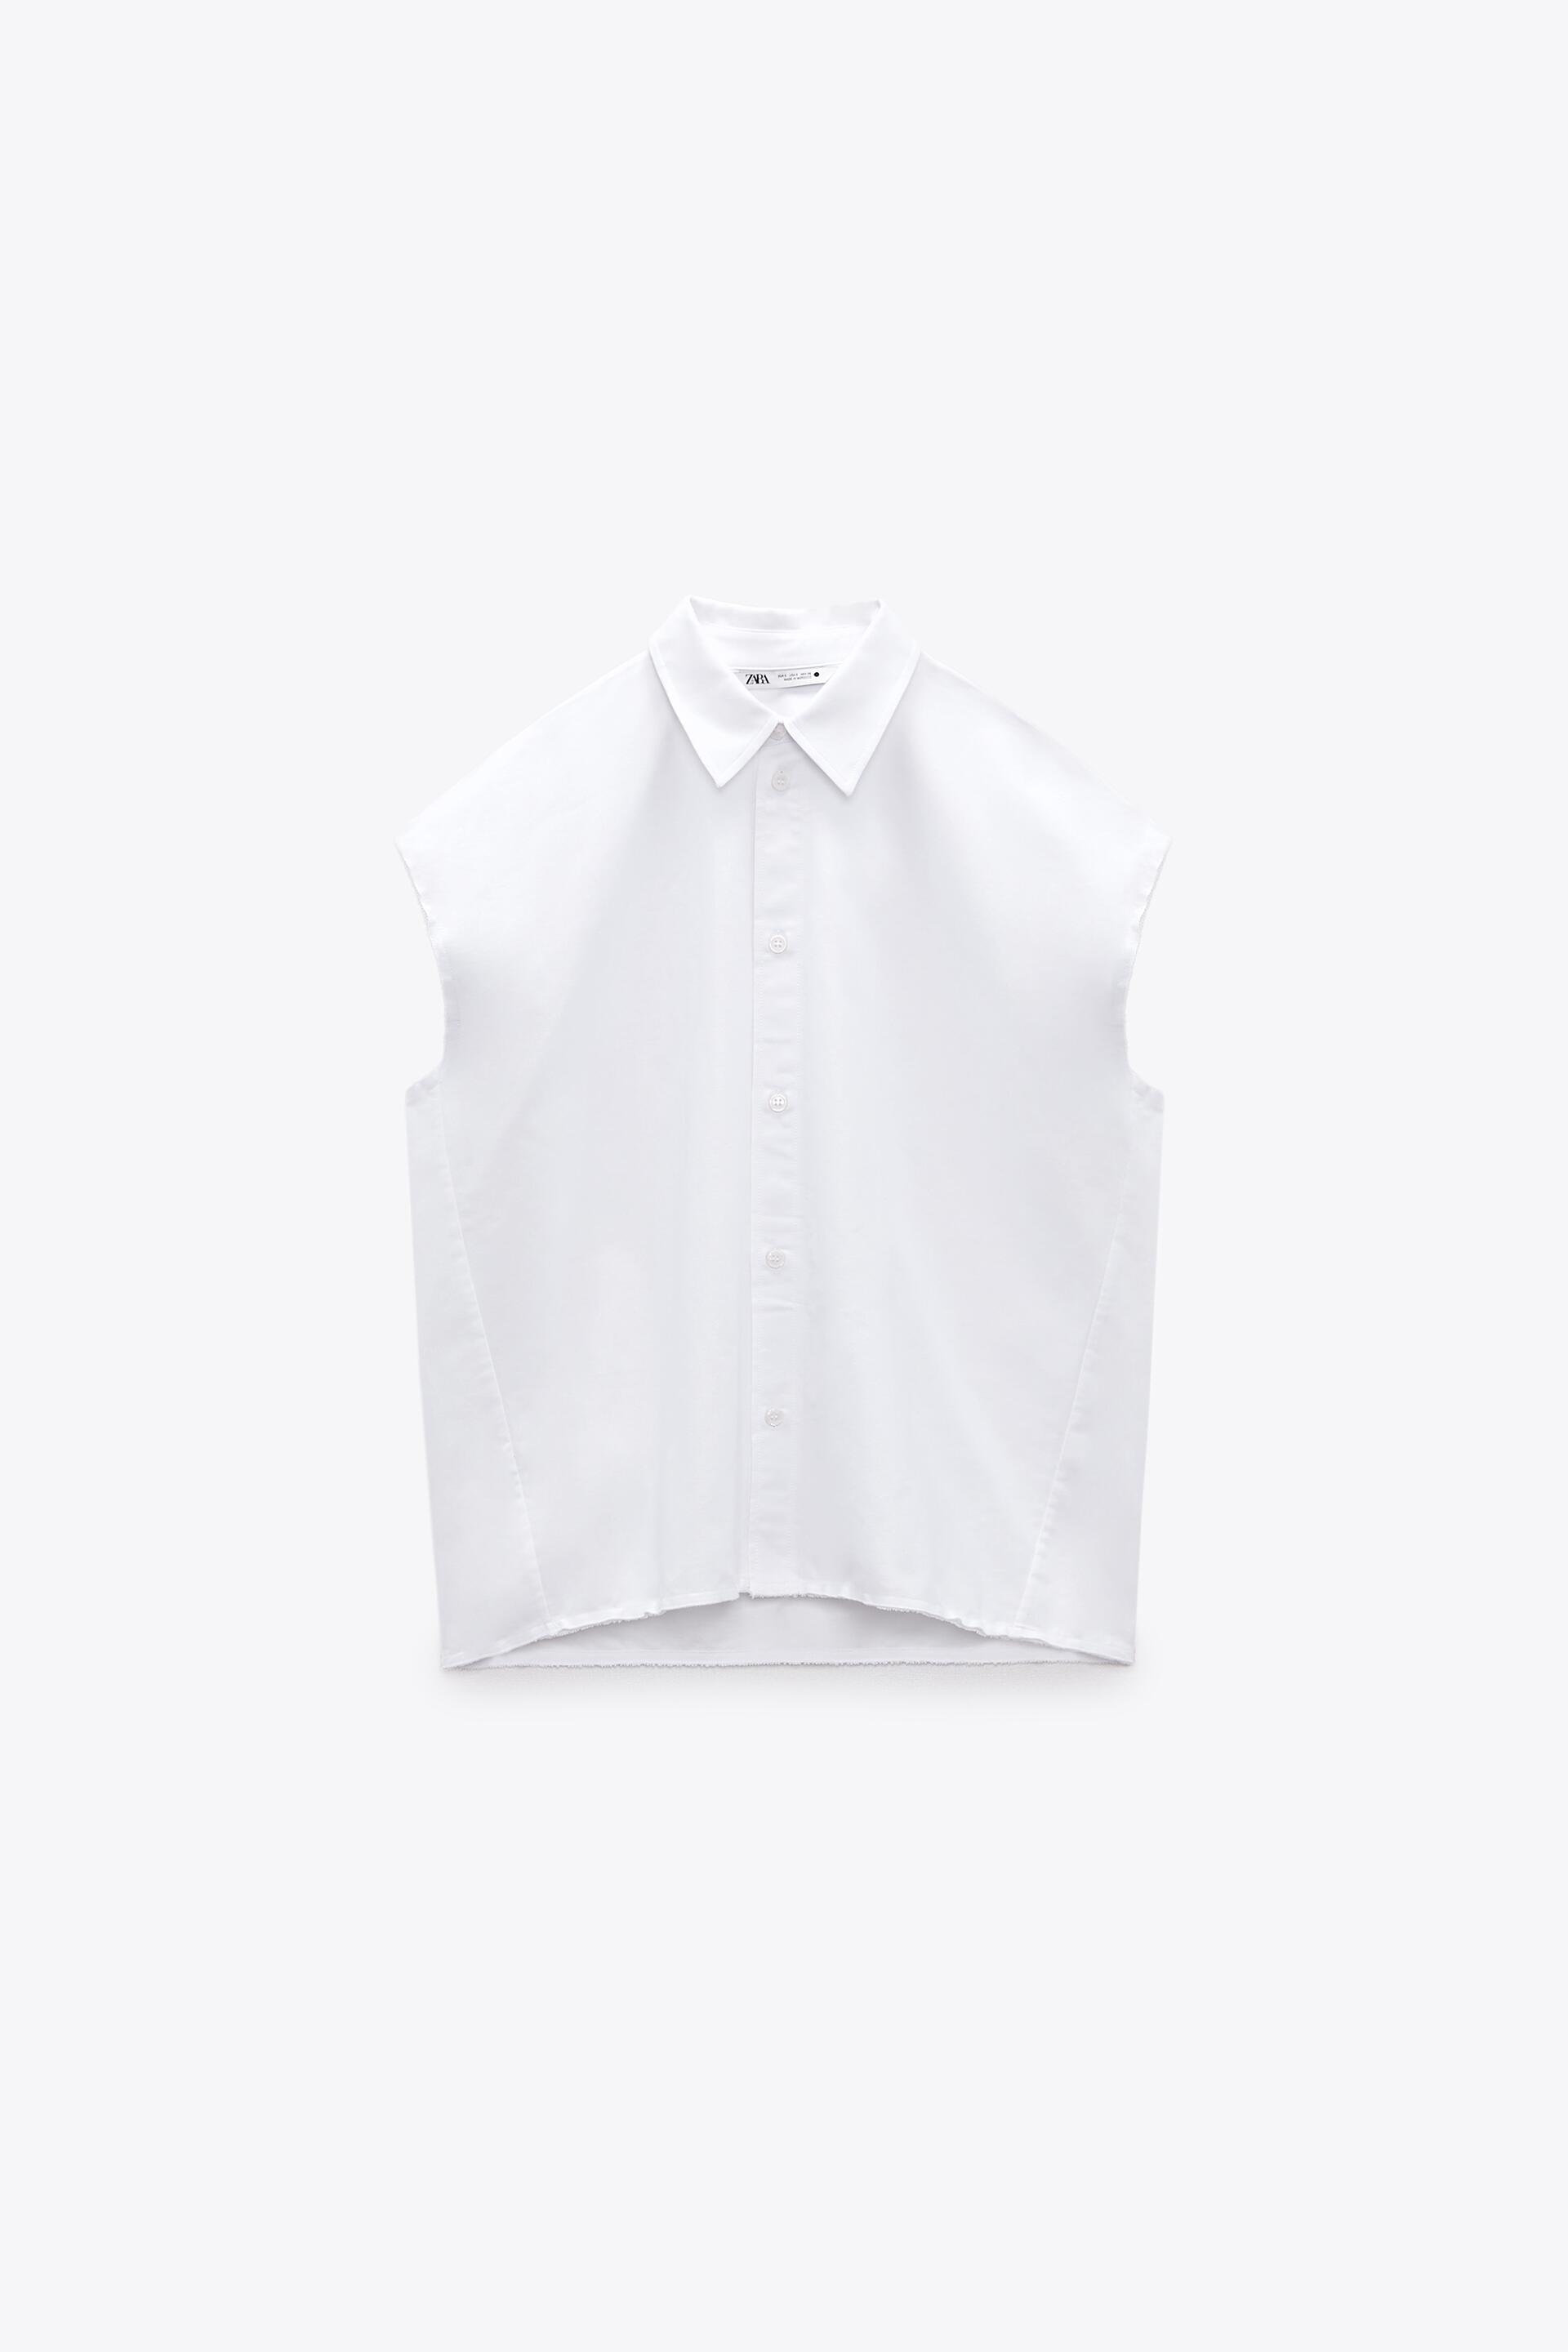 Рубашка женская ZARA 04043047 белая XL (доставка из-за рубежа)